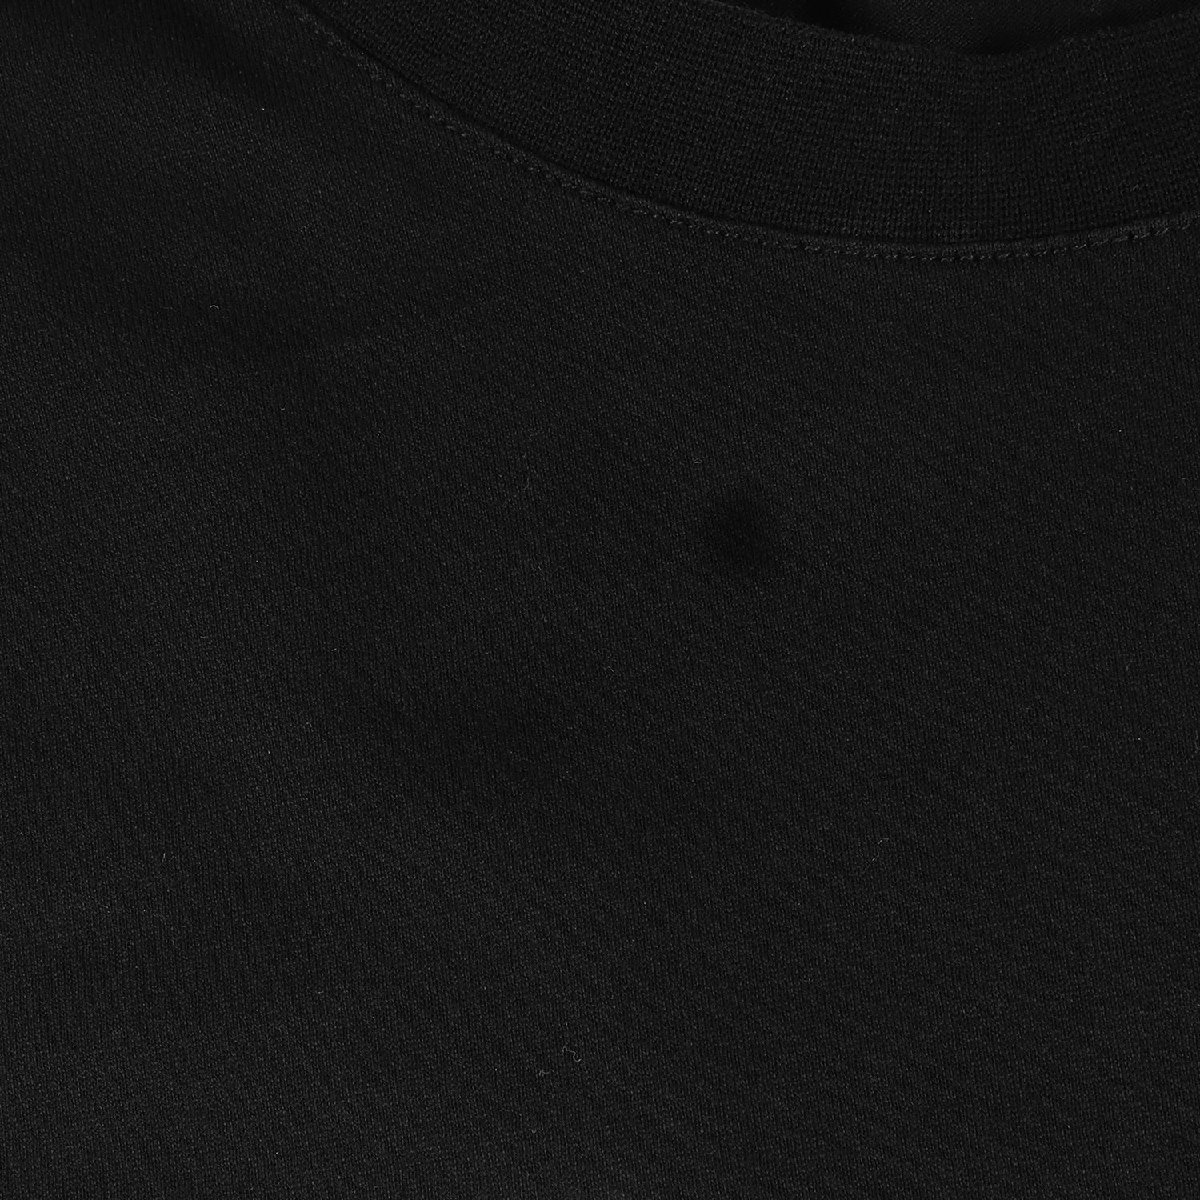 BURBERRY バーバリー Tシャツ サイズ:S LOVE フォト モンタージュ プリント 8030765 クルーネック LONDON ENGLAND ブラック 黒 ブランド_画像8